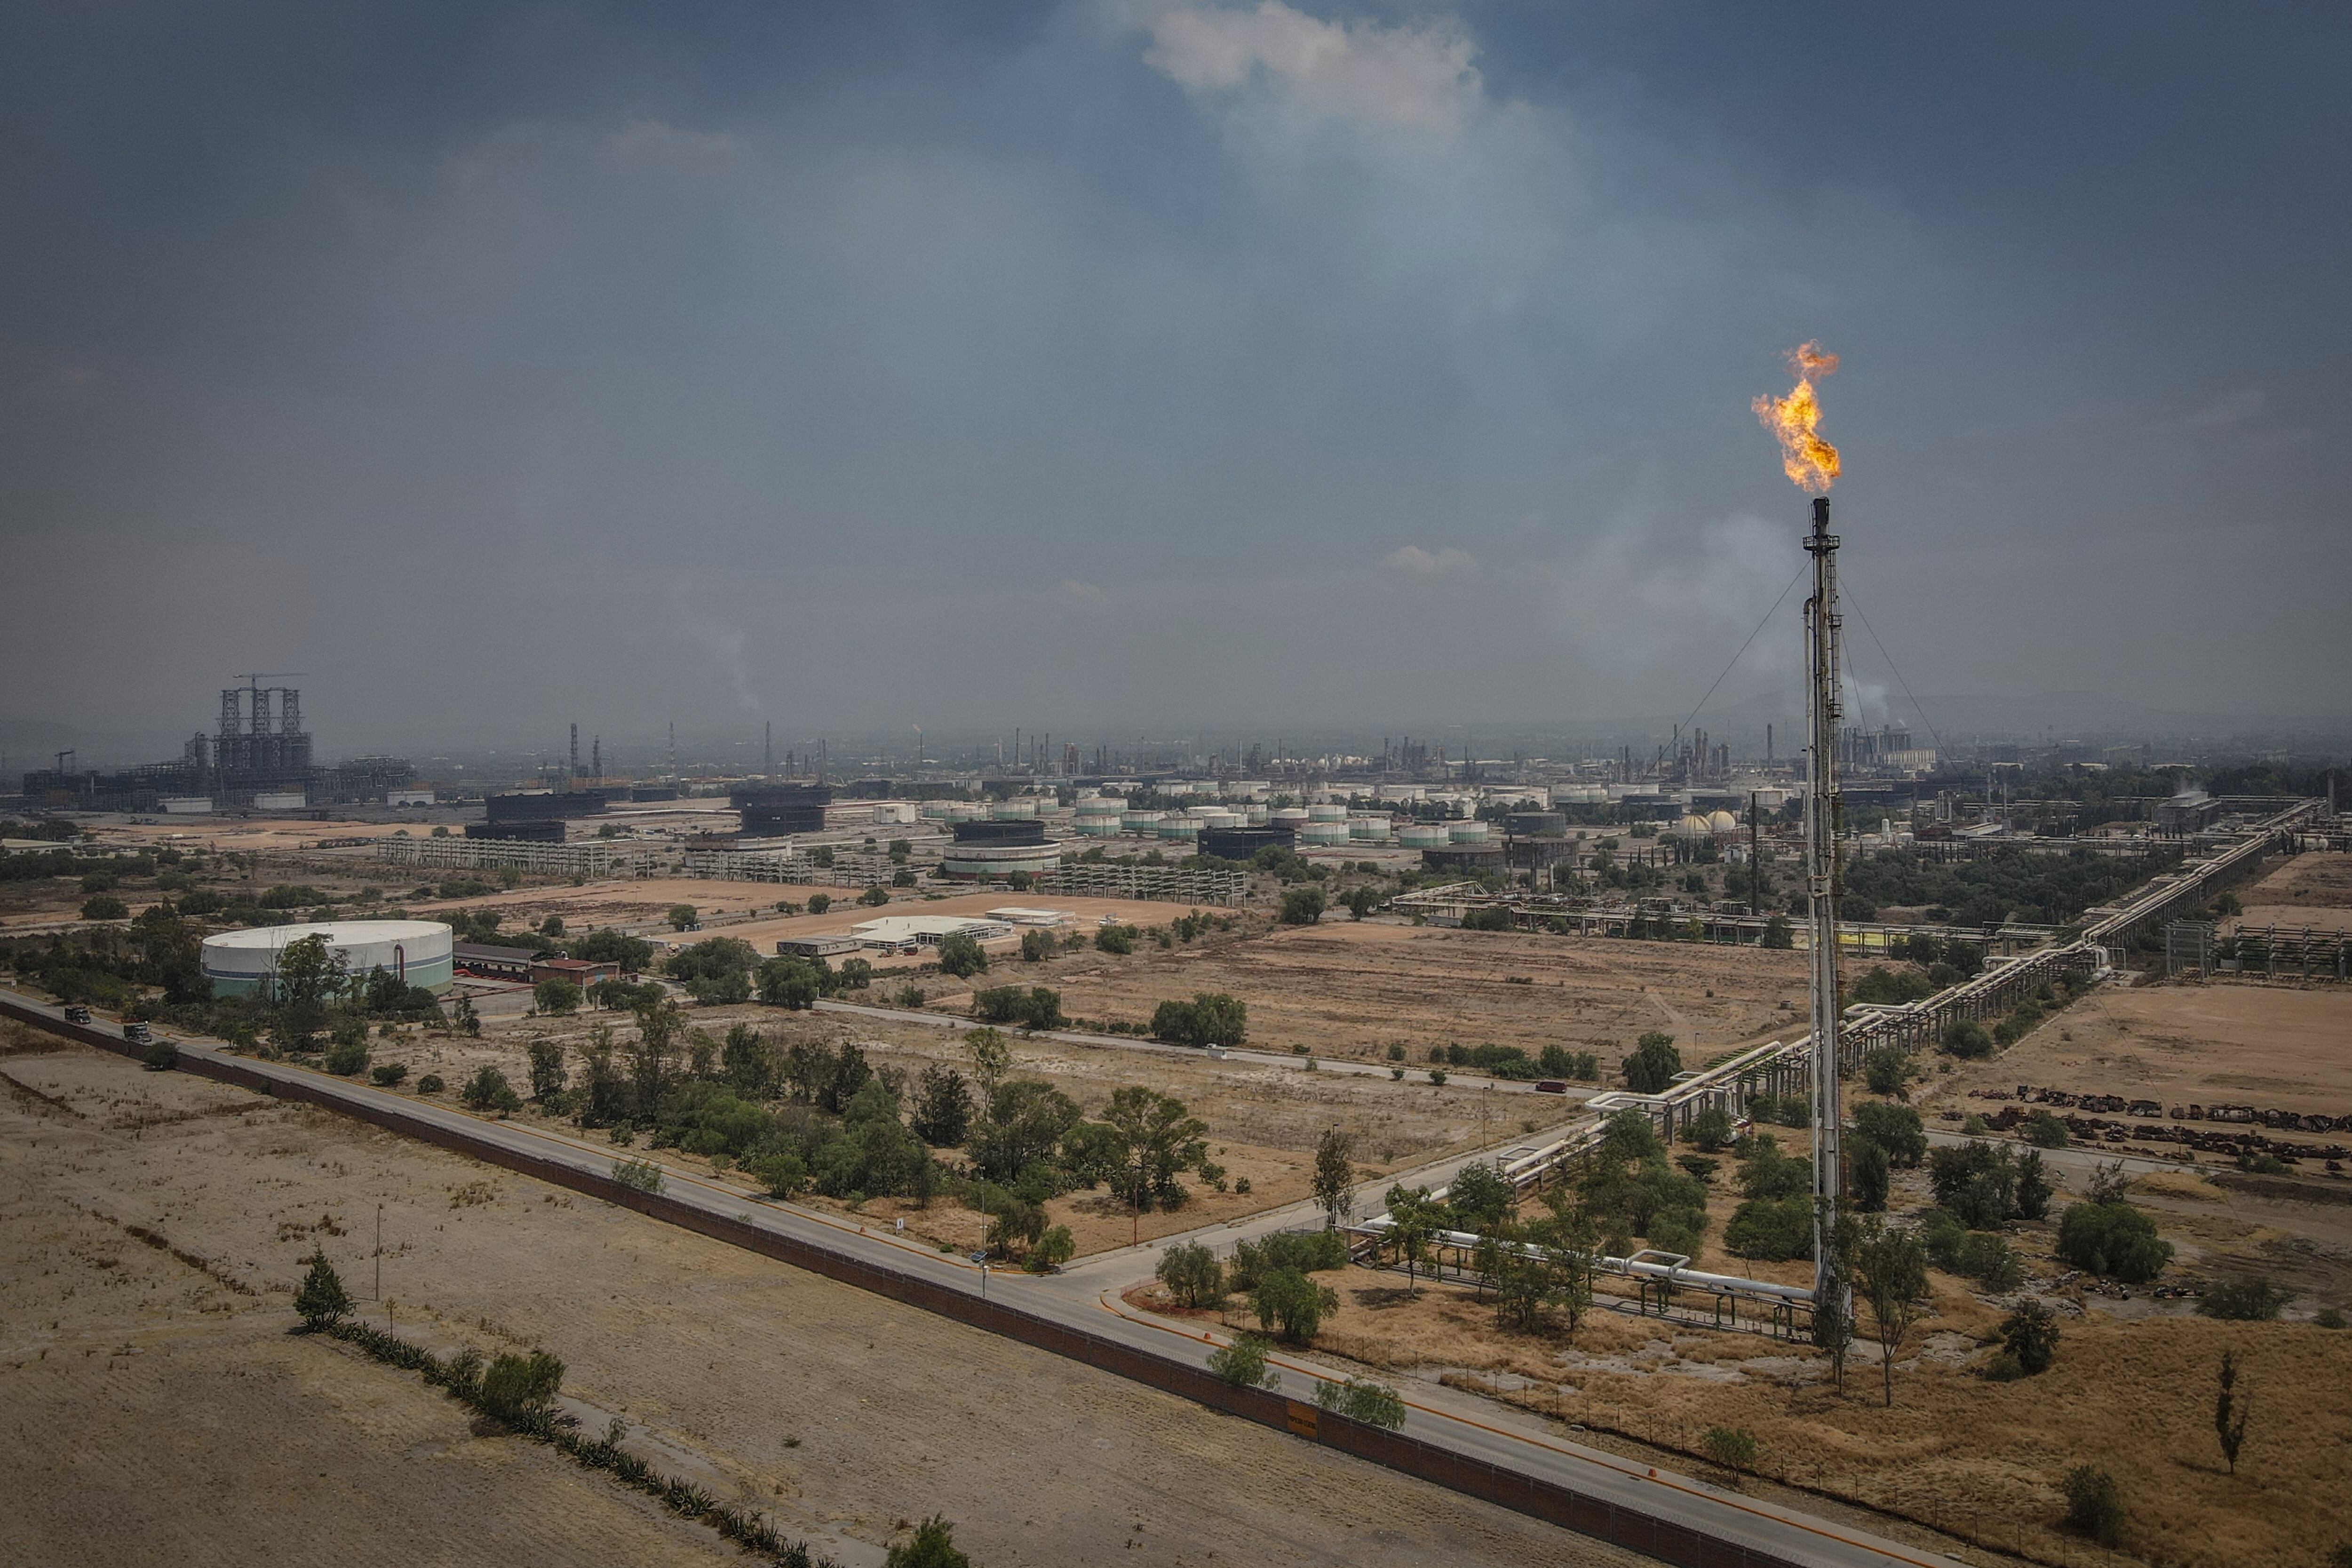 La actividad de la Refinería de Petróleos Mexicanos, en Tula, Hidalgo contribuye a la mala calidad del aire en el Valle de México. 